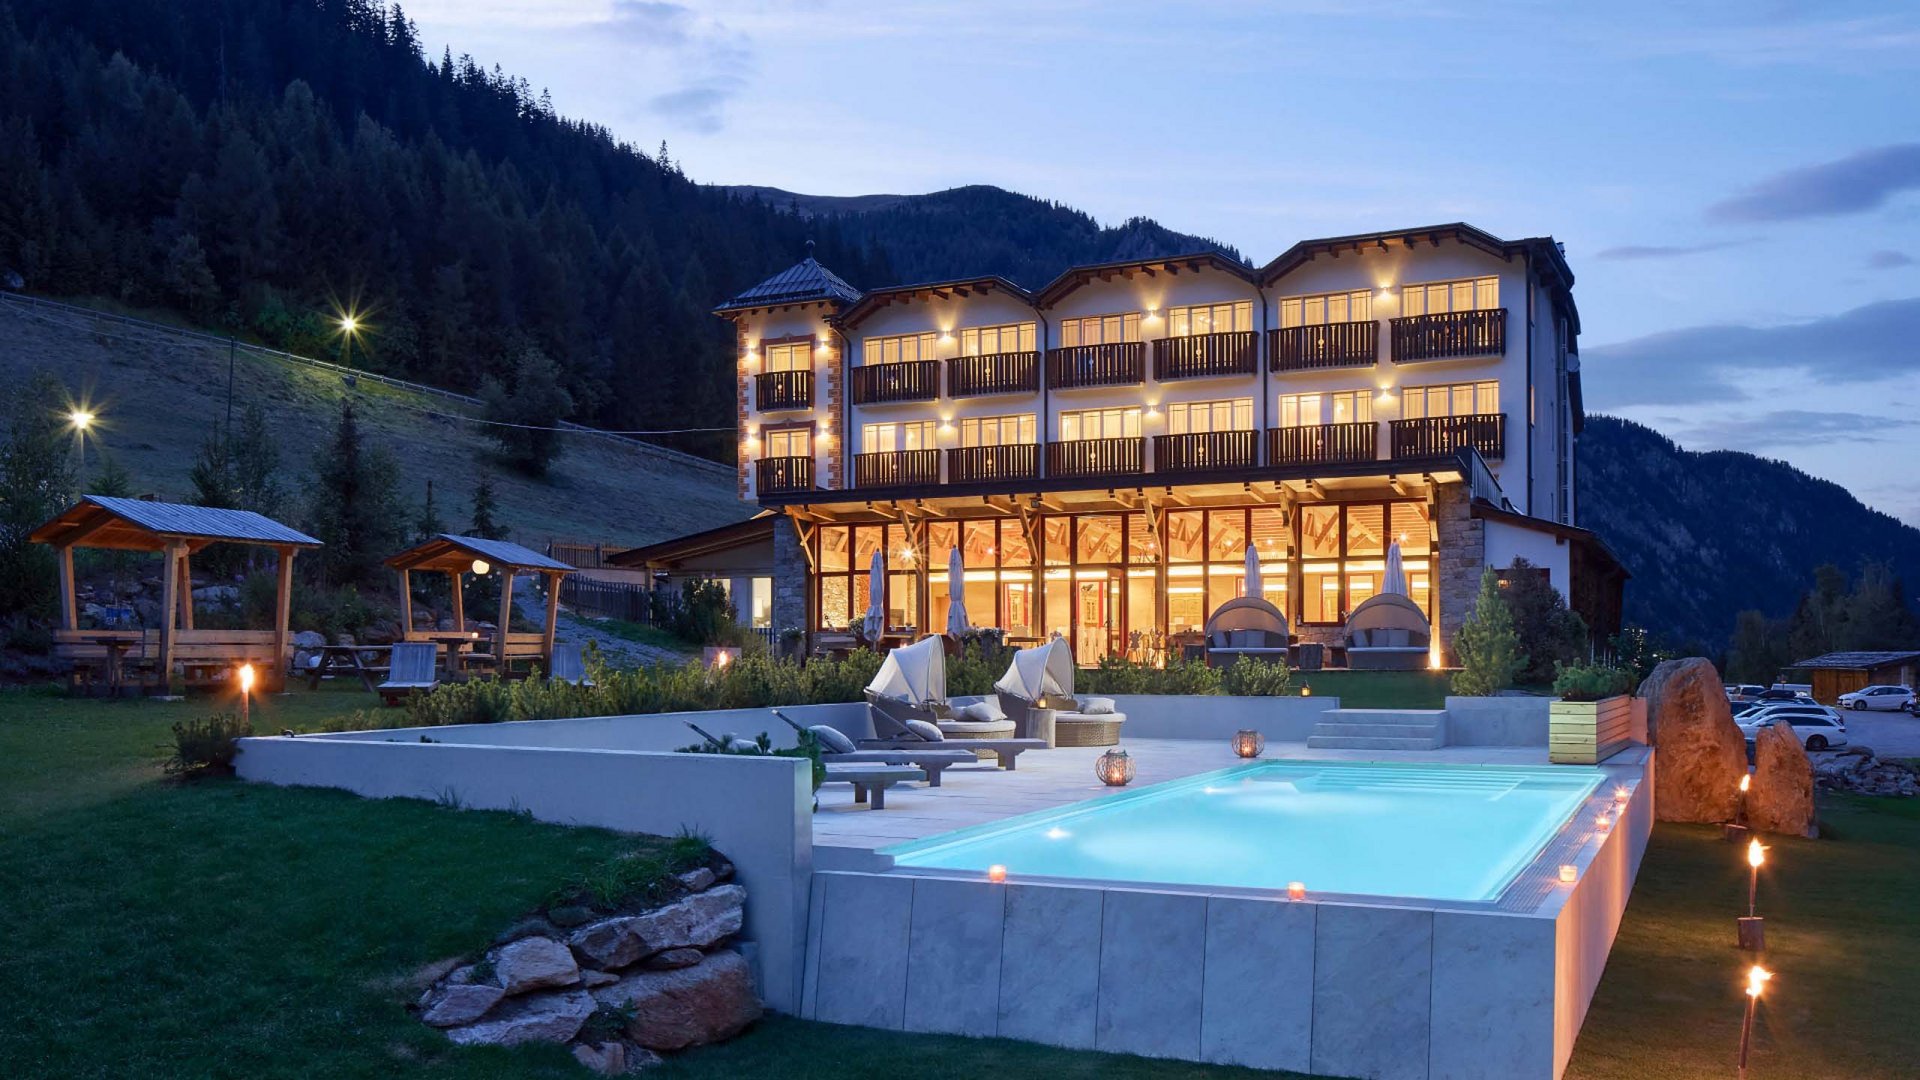 Abendansicht des Hotel Bella Vista mit einem beleuchteten Außenpool im Vordergrund, umgeben von der malerischen Südtiroler Bergkulisse, die eine ruhige und entspannende Atmosphäre schafft.